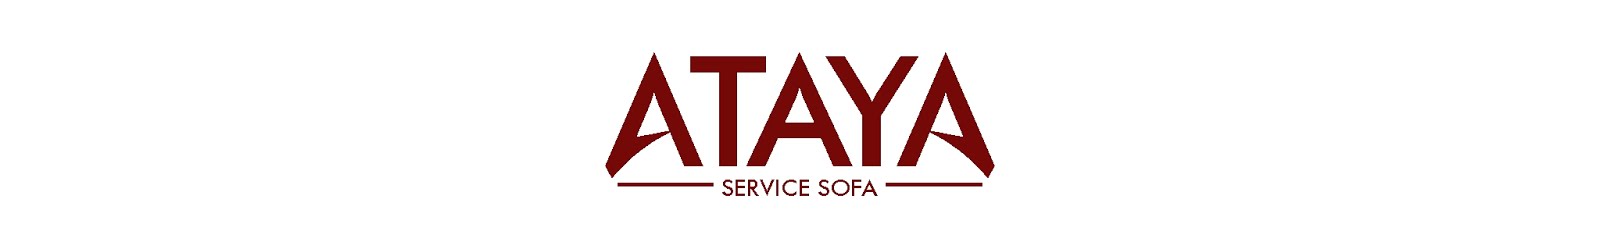 08118907300 | Jasa Reparasi Sofa Jakarta | Layanan Premium